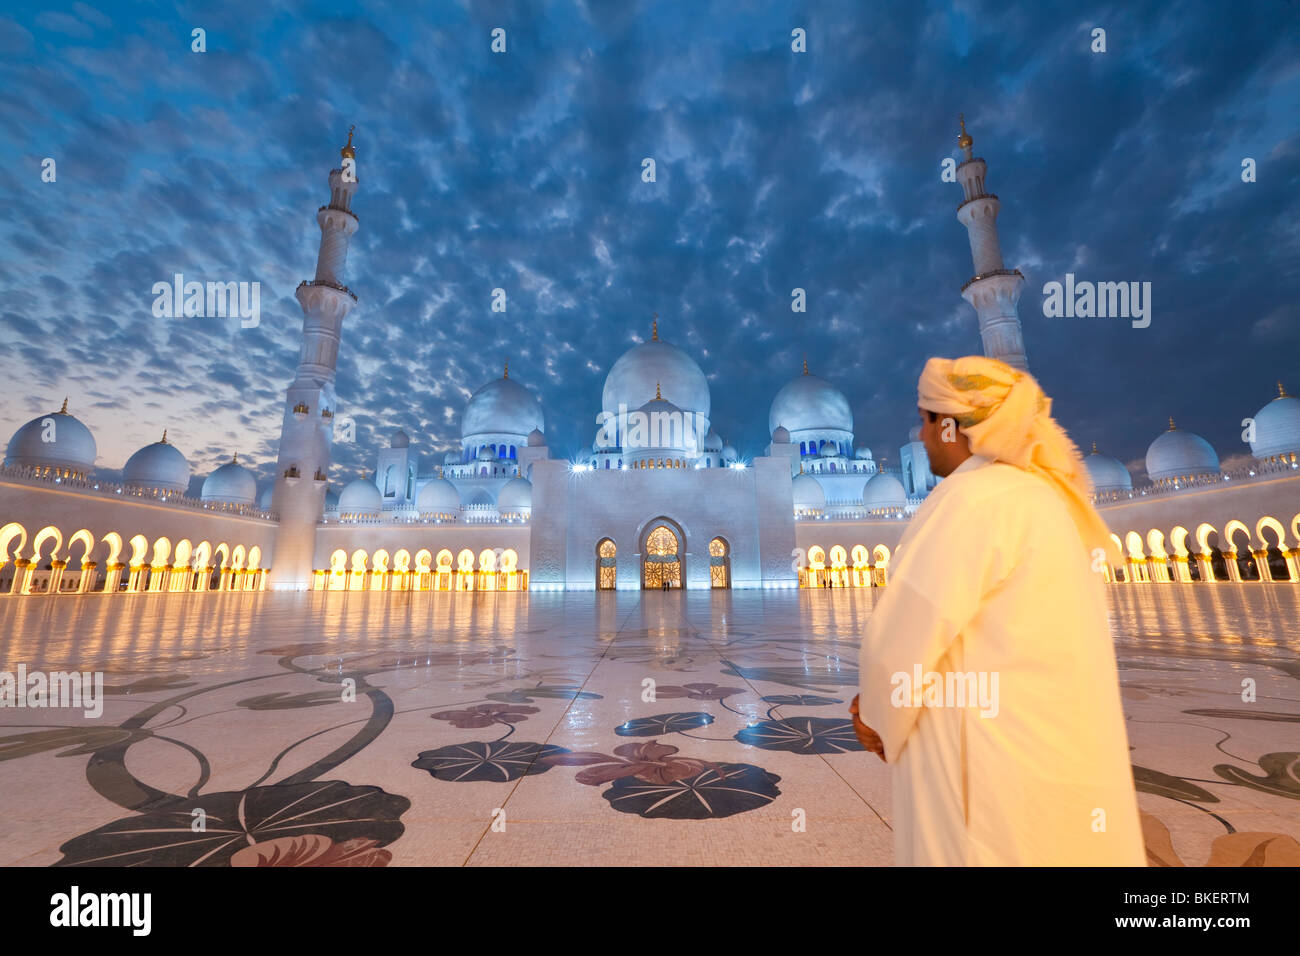 Mosquée Sheikh Zayed Bin Sultan Al Nahyan, Abu Dhabi, Émirats arabes unis, ÉMIRATS ARABES UNIS - M.R Banque D'Images